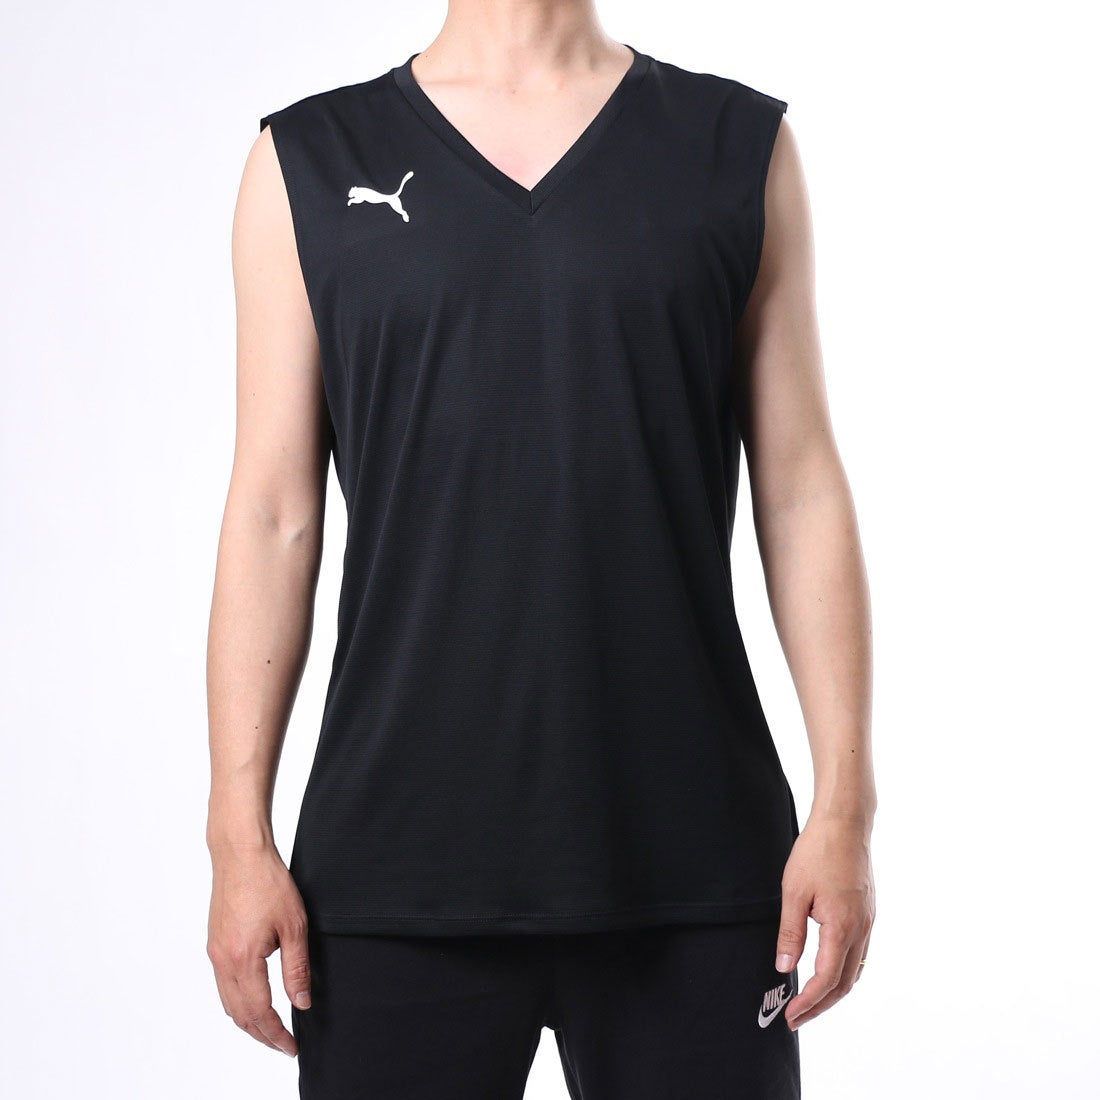 セール 登場から人気沸騰 プーマ PUMA ノースリーブ インナーシャツ アンダーシャツ メンズ 男性 ランニング 運動 ランニングシャツ  トレーニング ゲームシャツ ジム 658675